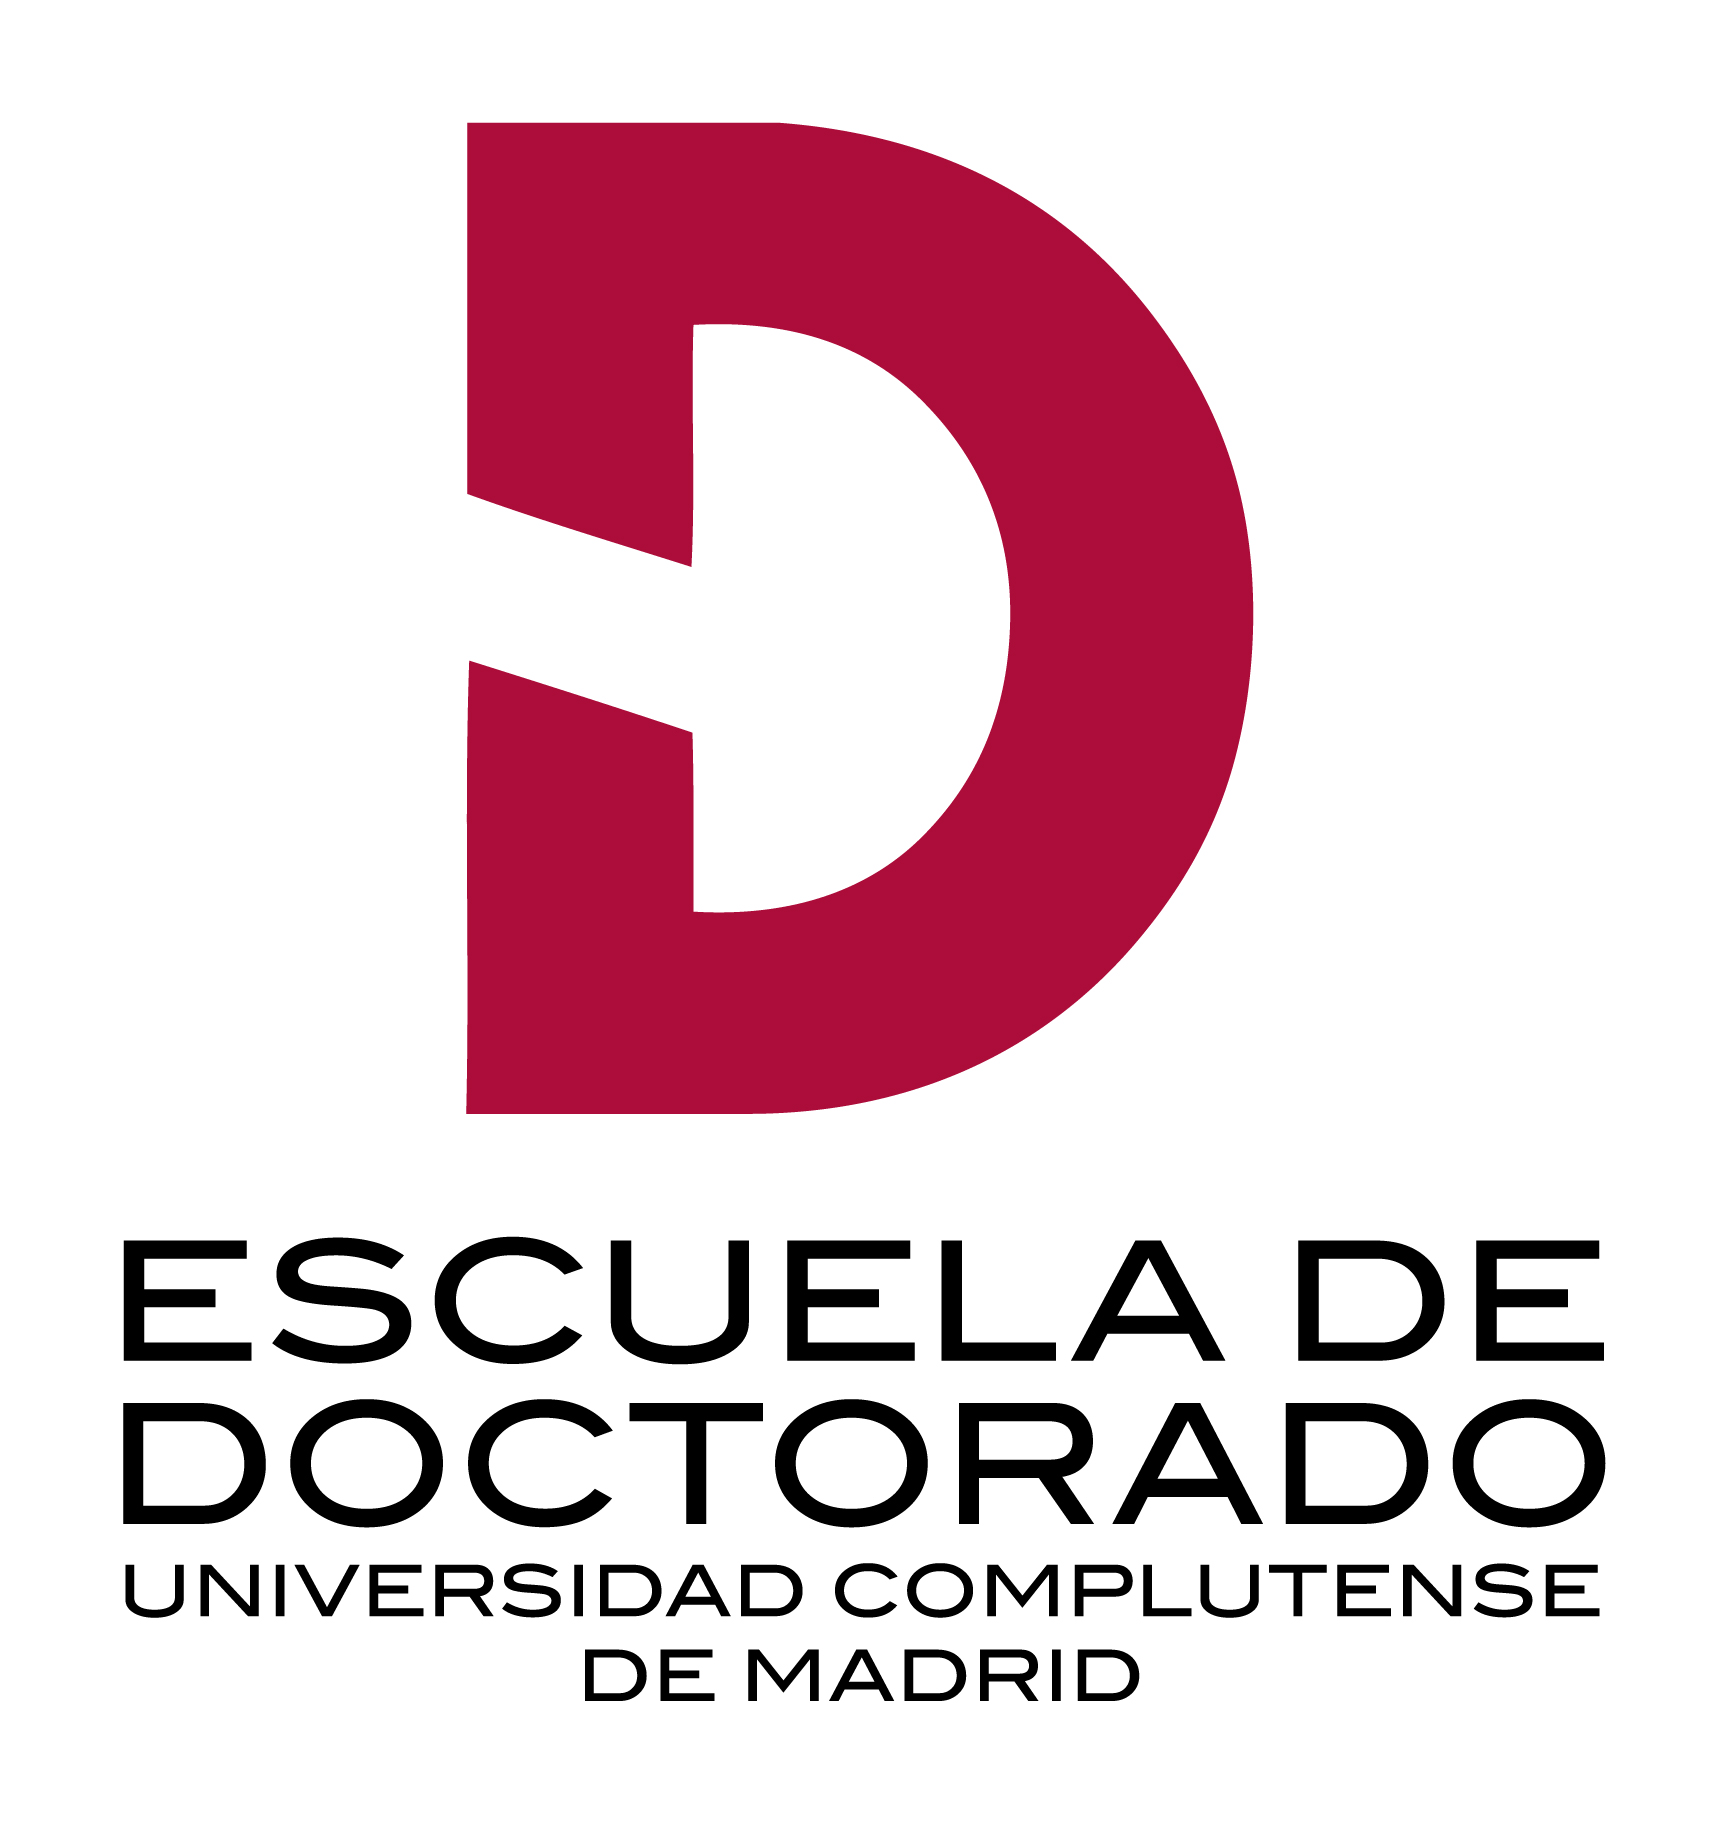 UCM - Escuela de Doctorado